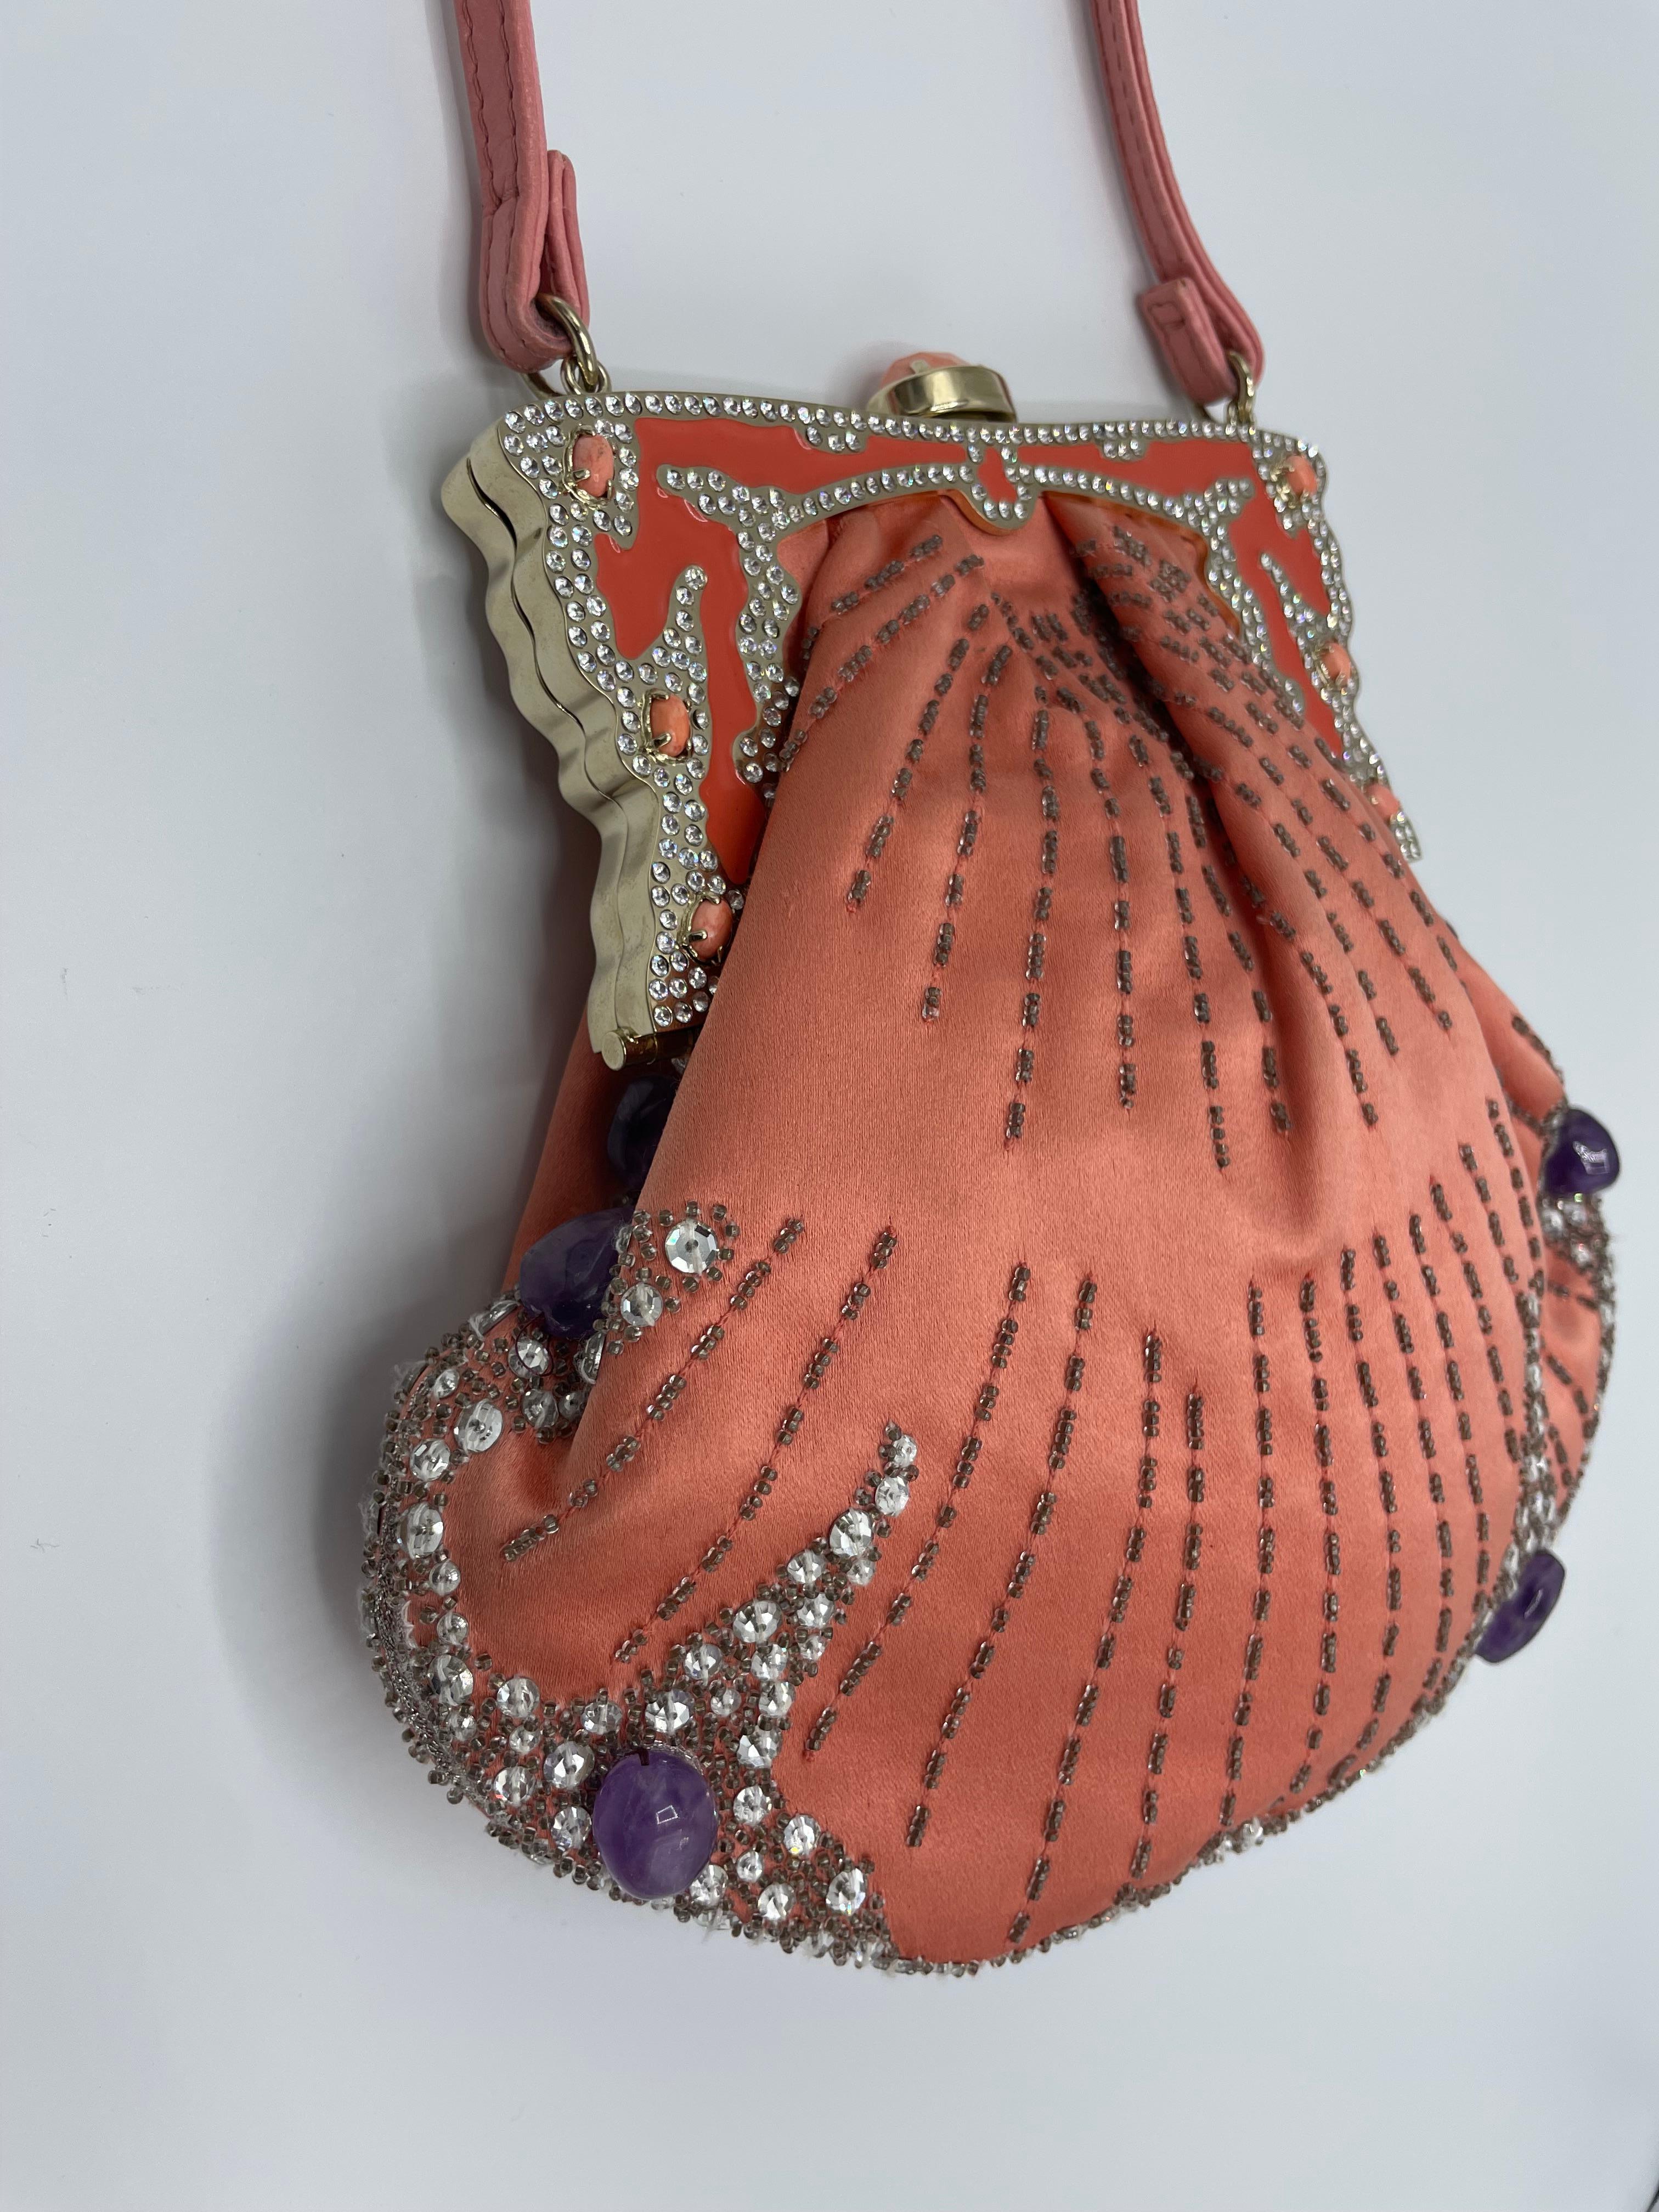 Perfekter Zustand für diese VALENTINO Garavani Abendtasche. Diese rosafarbene Satintasche ist mit Strasssteinen und Amethystperlen bestickt. Der Verschluss der Tasche ist mit rosa Perlen und Strasssteinen besetzt. Ein feiner rosa Lederriemen